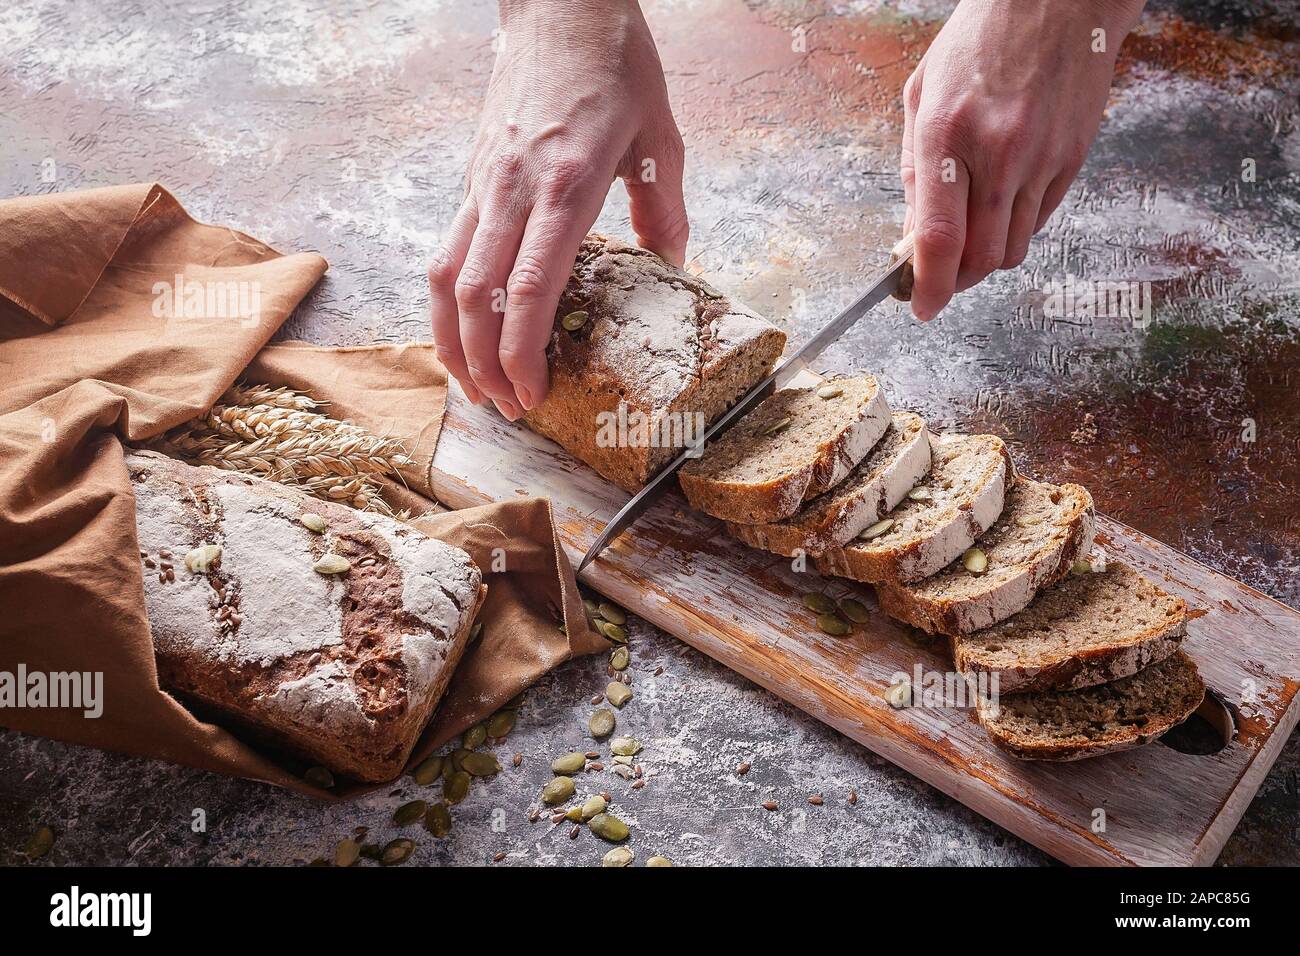 Les mains femelles coupent du pain de levain fraîchement cuit avec des graines de tournesol et de citrouille sur une serviette brune. Oreilles de blé. Prise de vue horizontale Banque D'Images